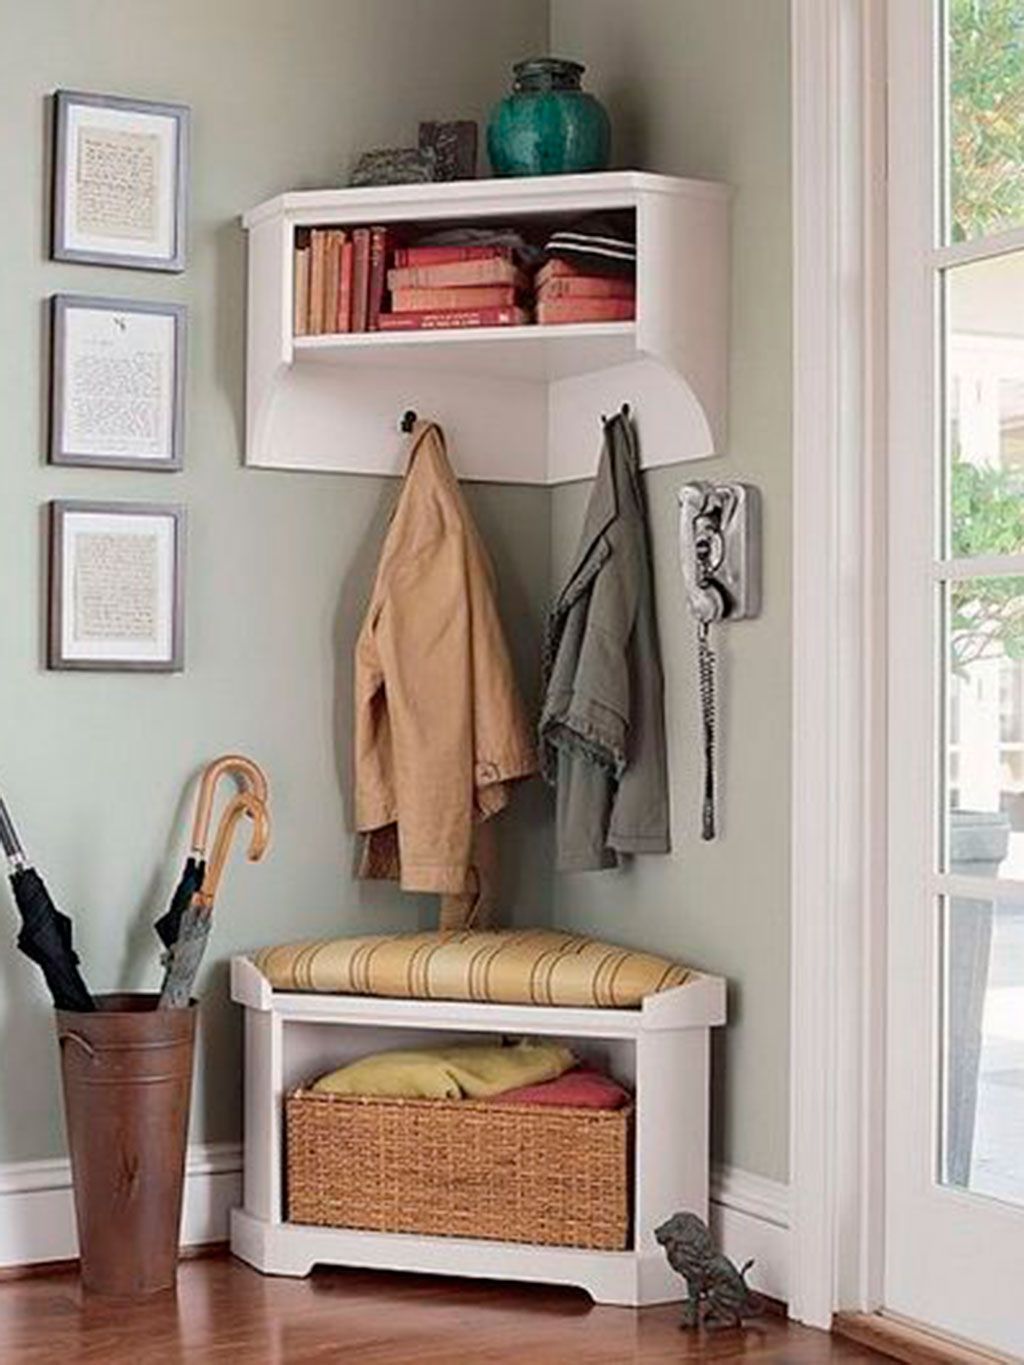 Ideas para decorar un recibidor pequeño y aprovechar el espacio